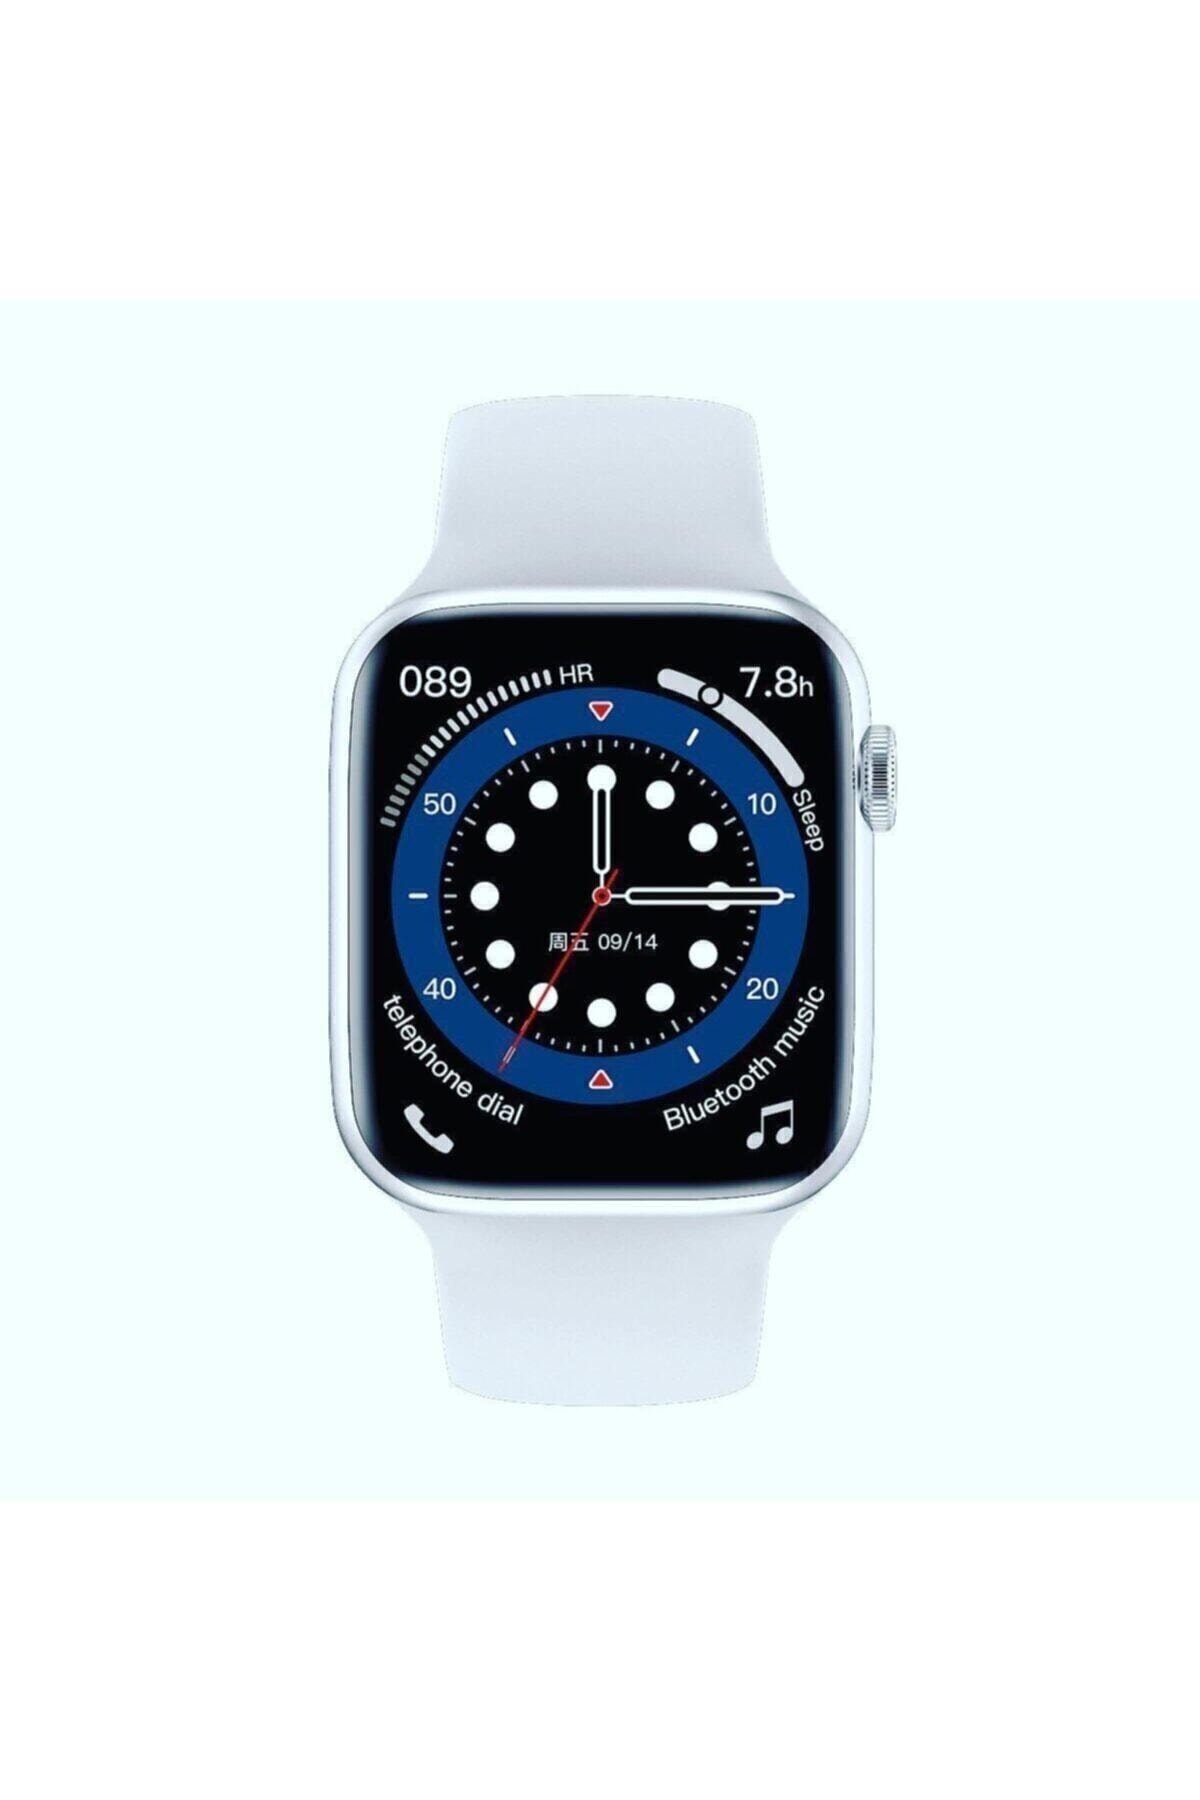 MEGA AKSESUAR Watch 6 Edition W26 Plus Yan Tuş Aktif Süper Kalite